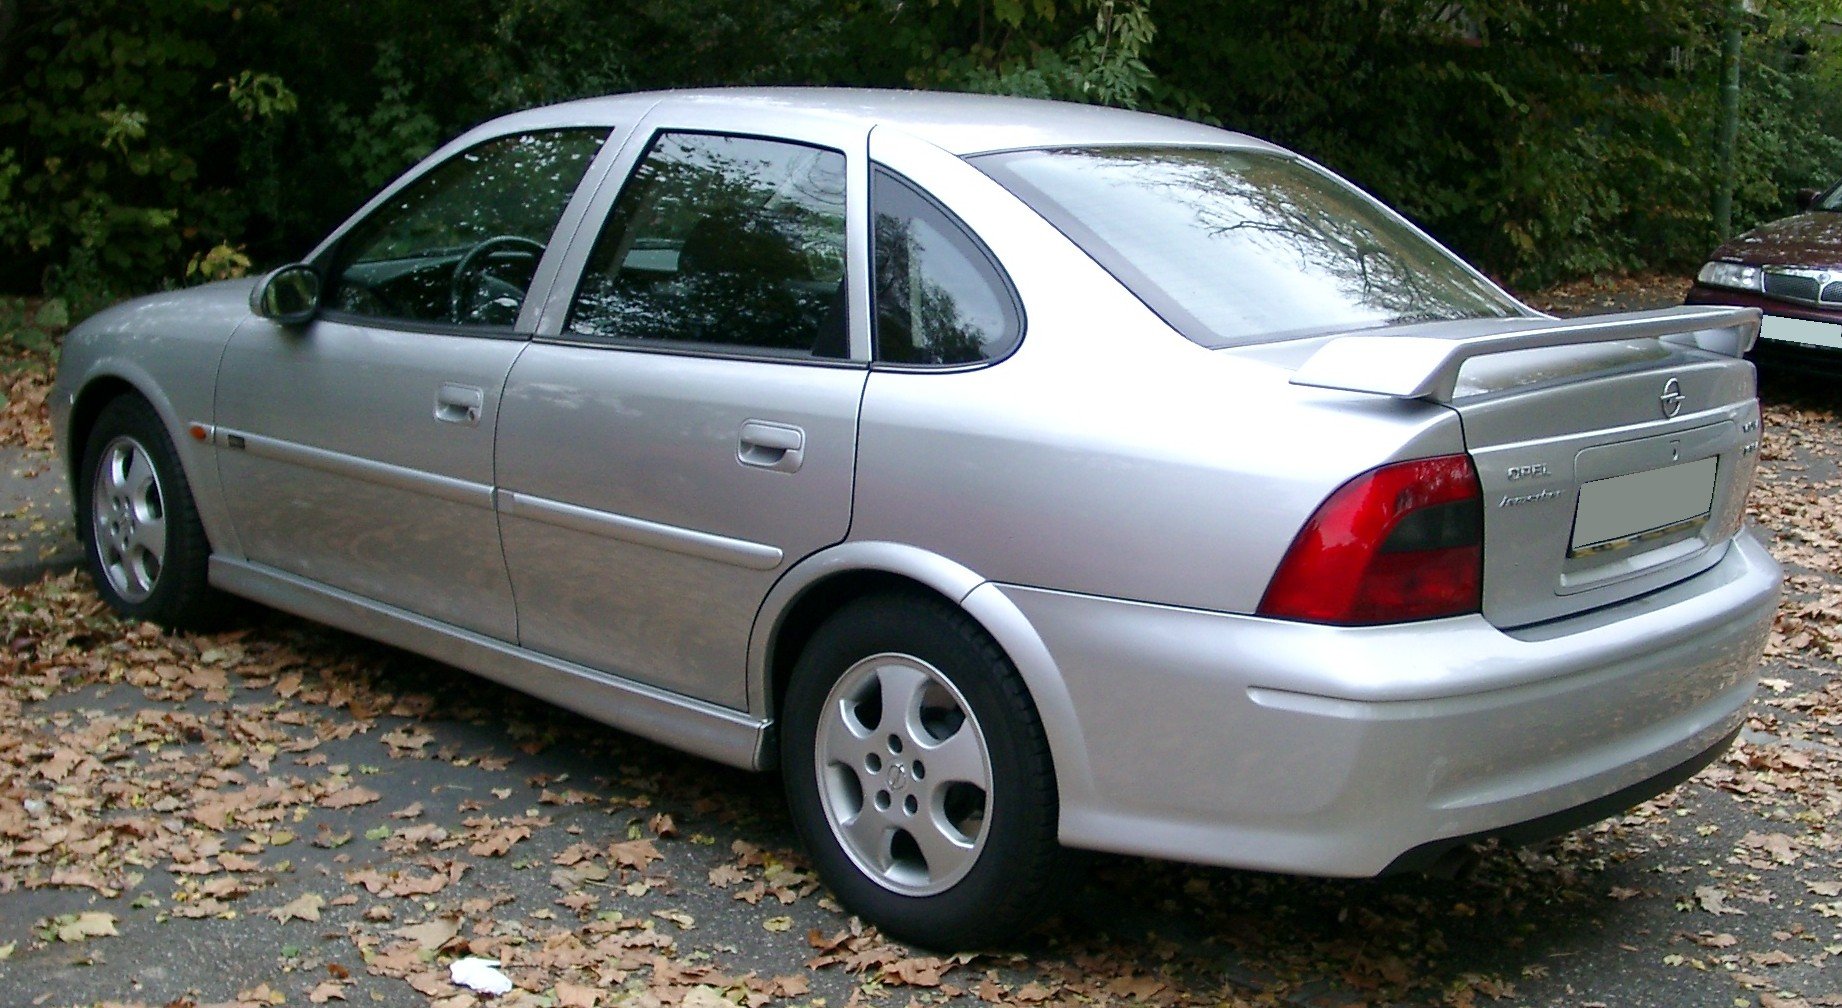 Автомобиль вектра б. Opel Vectra b 2000. Opel Vectra b 2002. Opel Vectra 1999. Opel Vectra b 1.6.